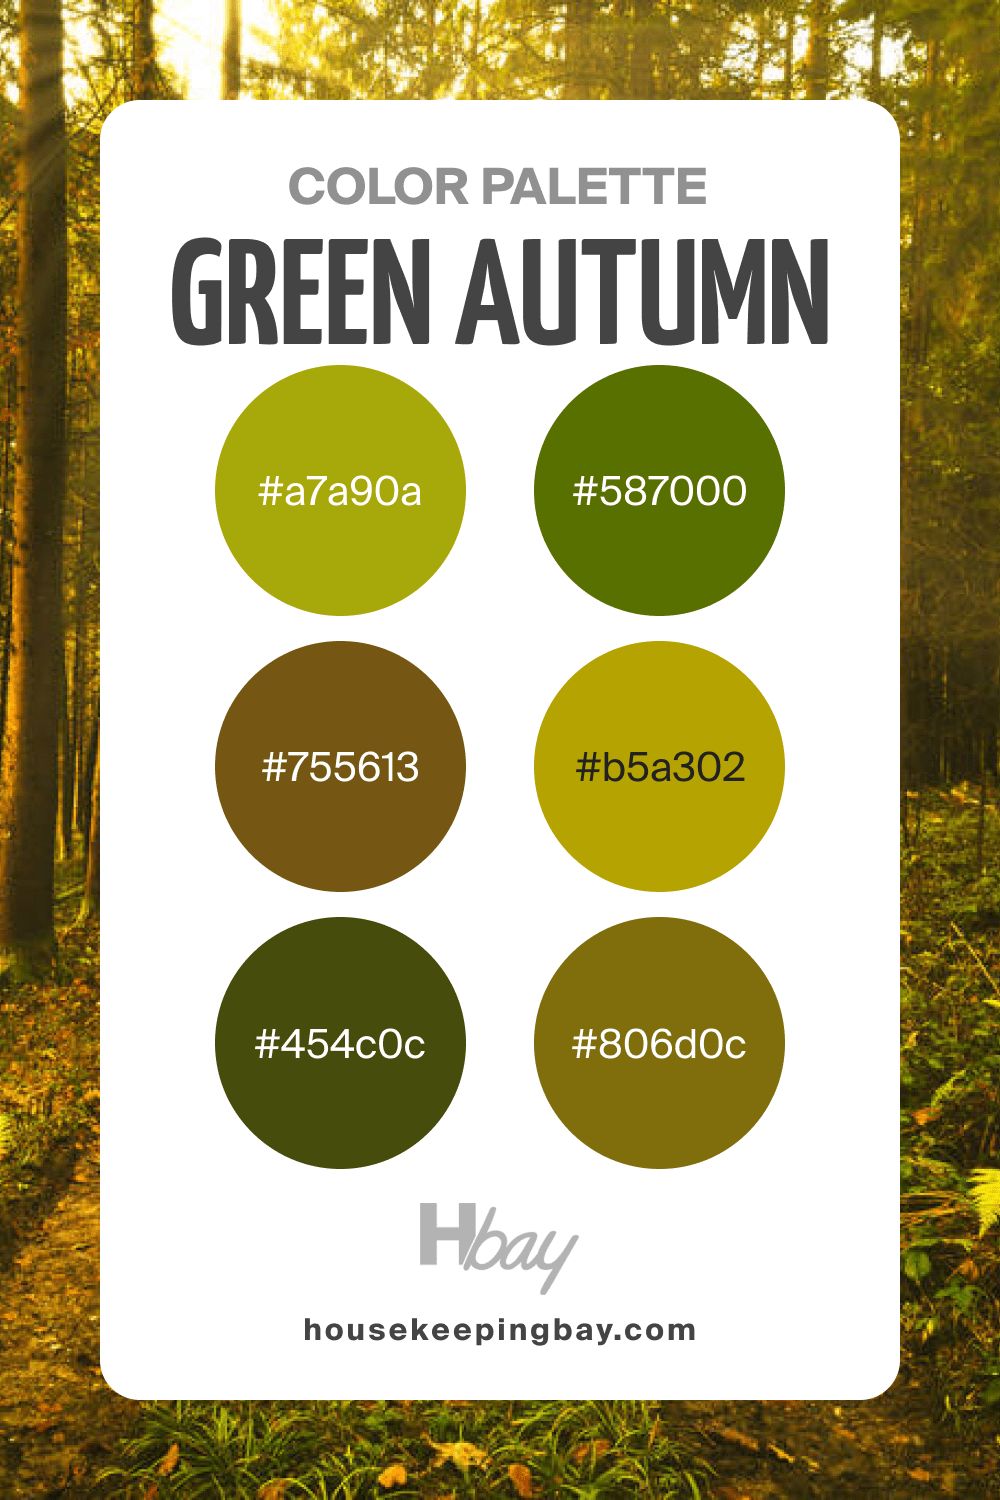 Autumn color palette green